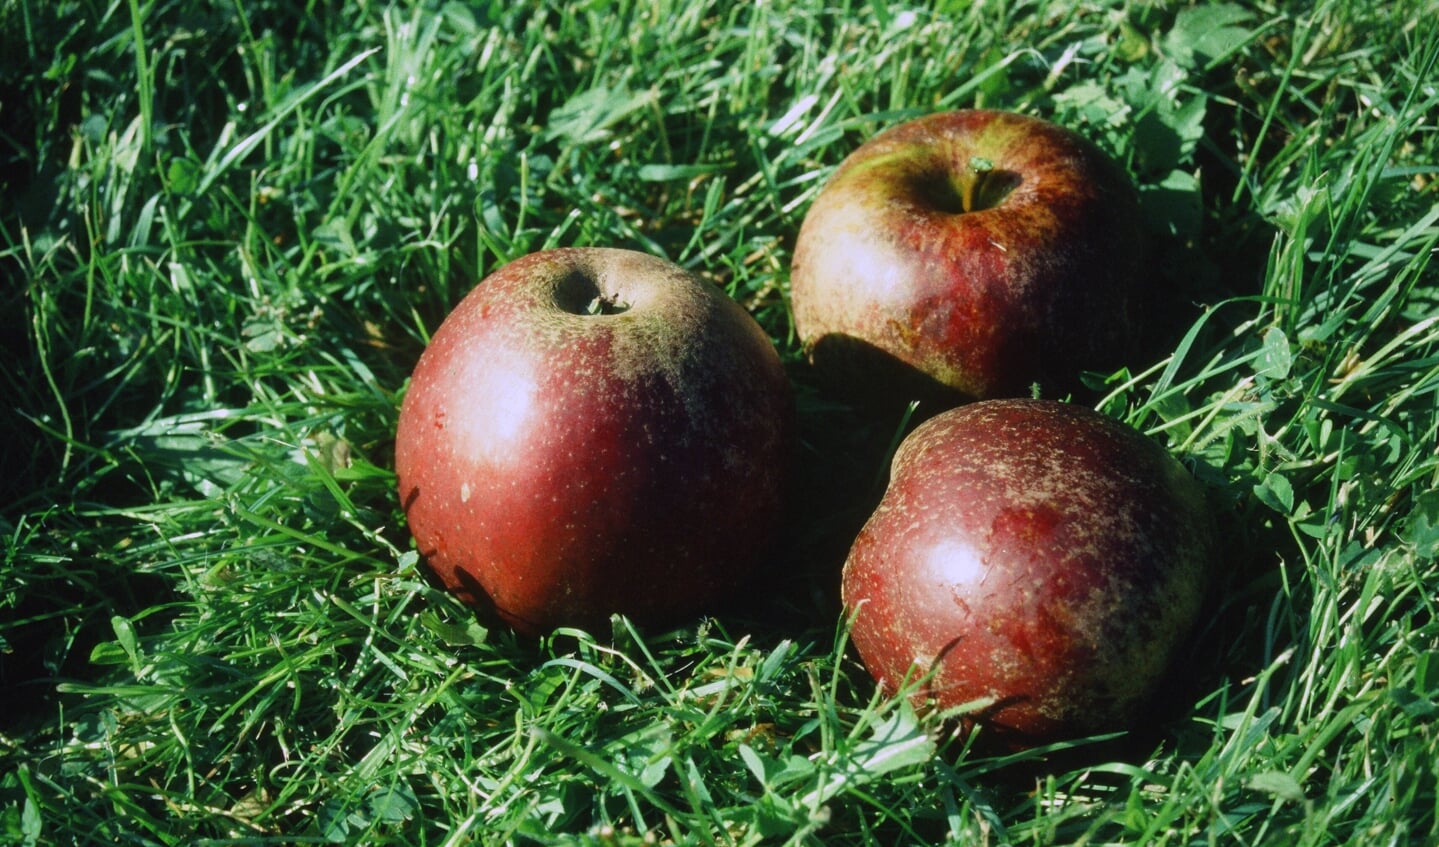 Rode Boskoop, een van de honderden appelsoorten die in IJsselstein groeien.